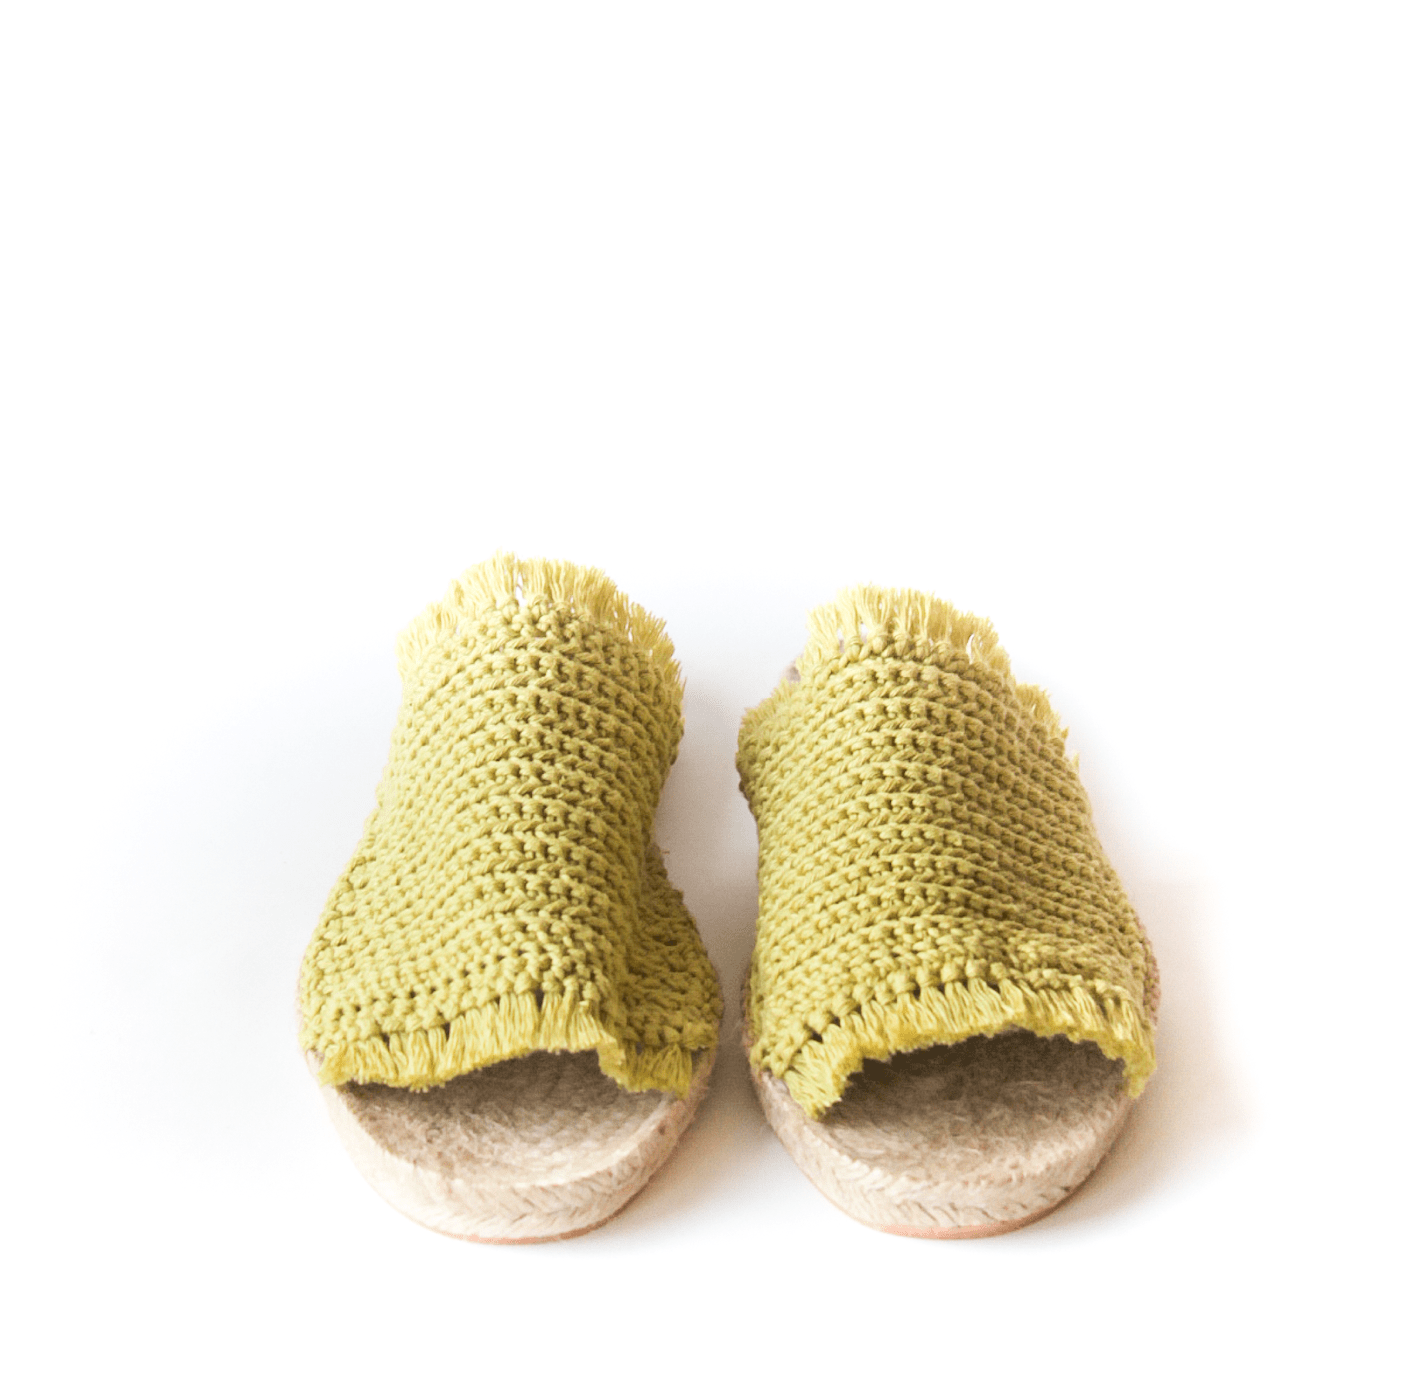 Sandalia Crochet Aceituna - Mon Mon Calzado